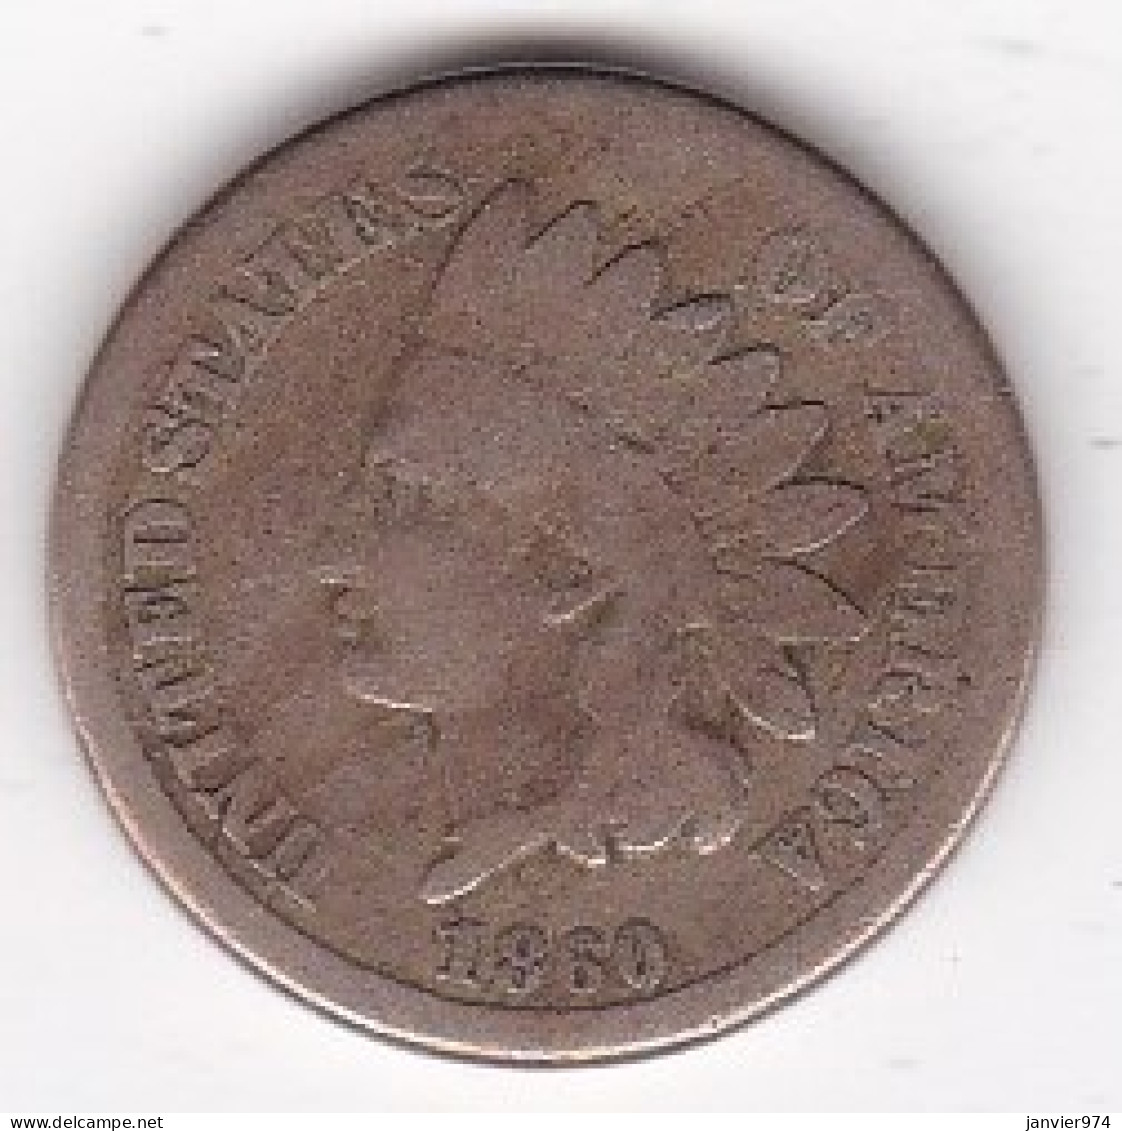 Etats-Unis . One Cent 1860 . Indian Head, En Cupronickel. - 1859-1909: Indian Head